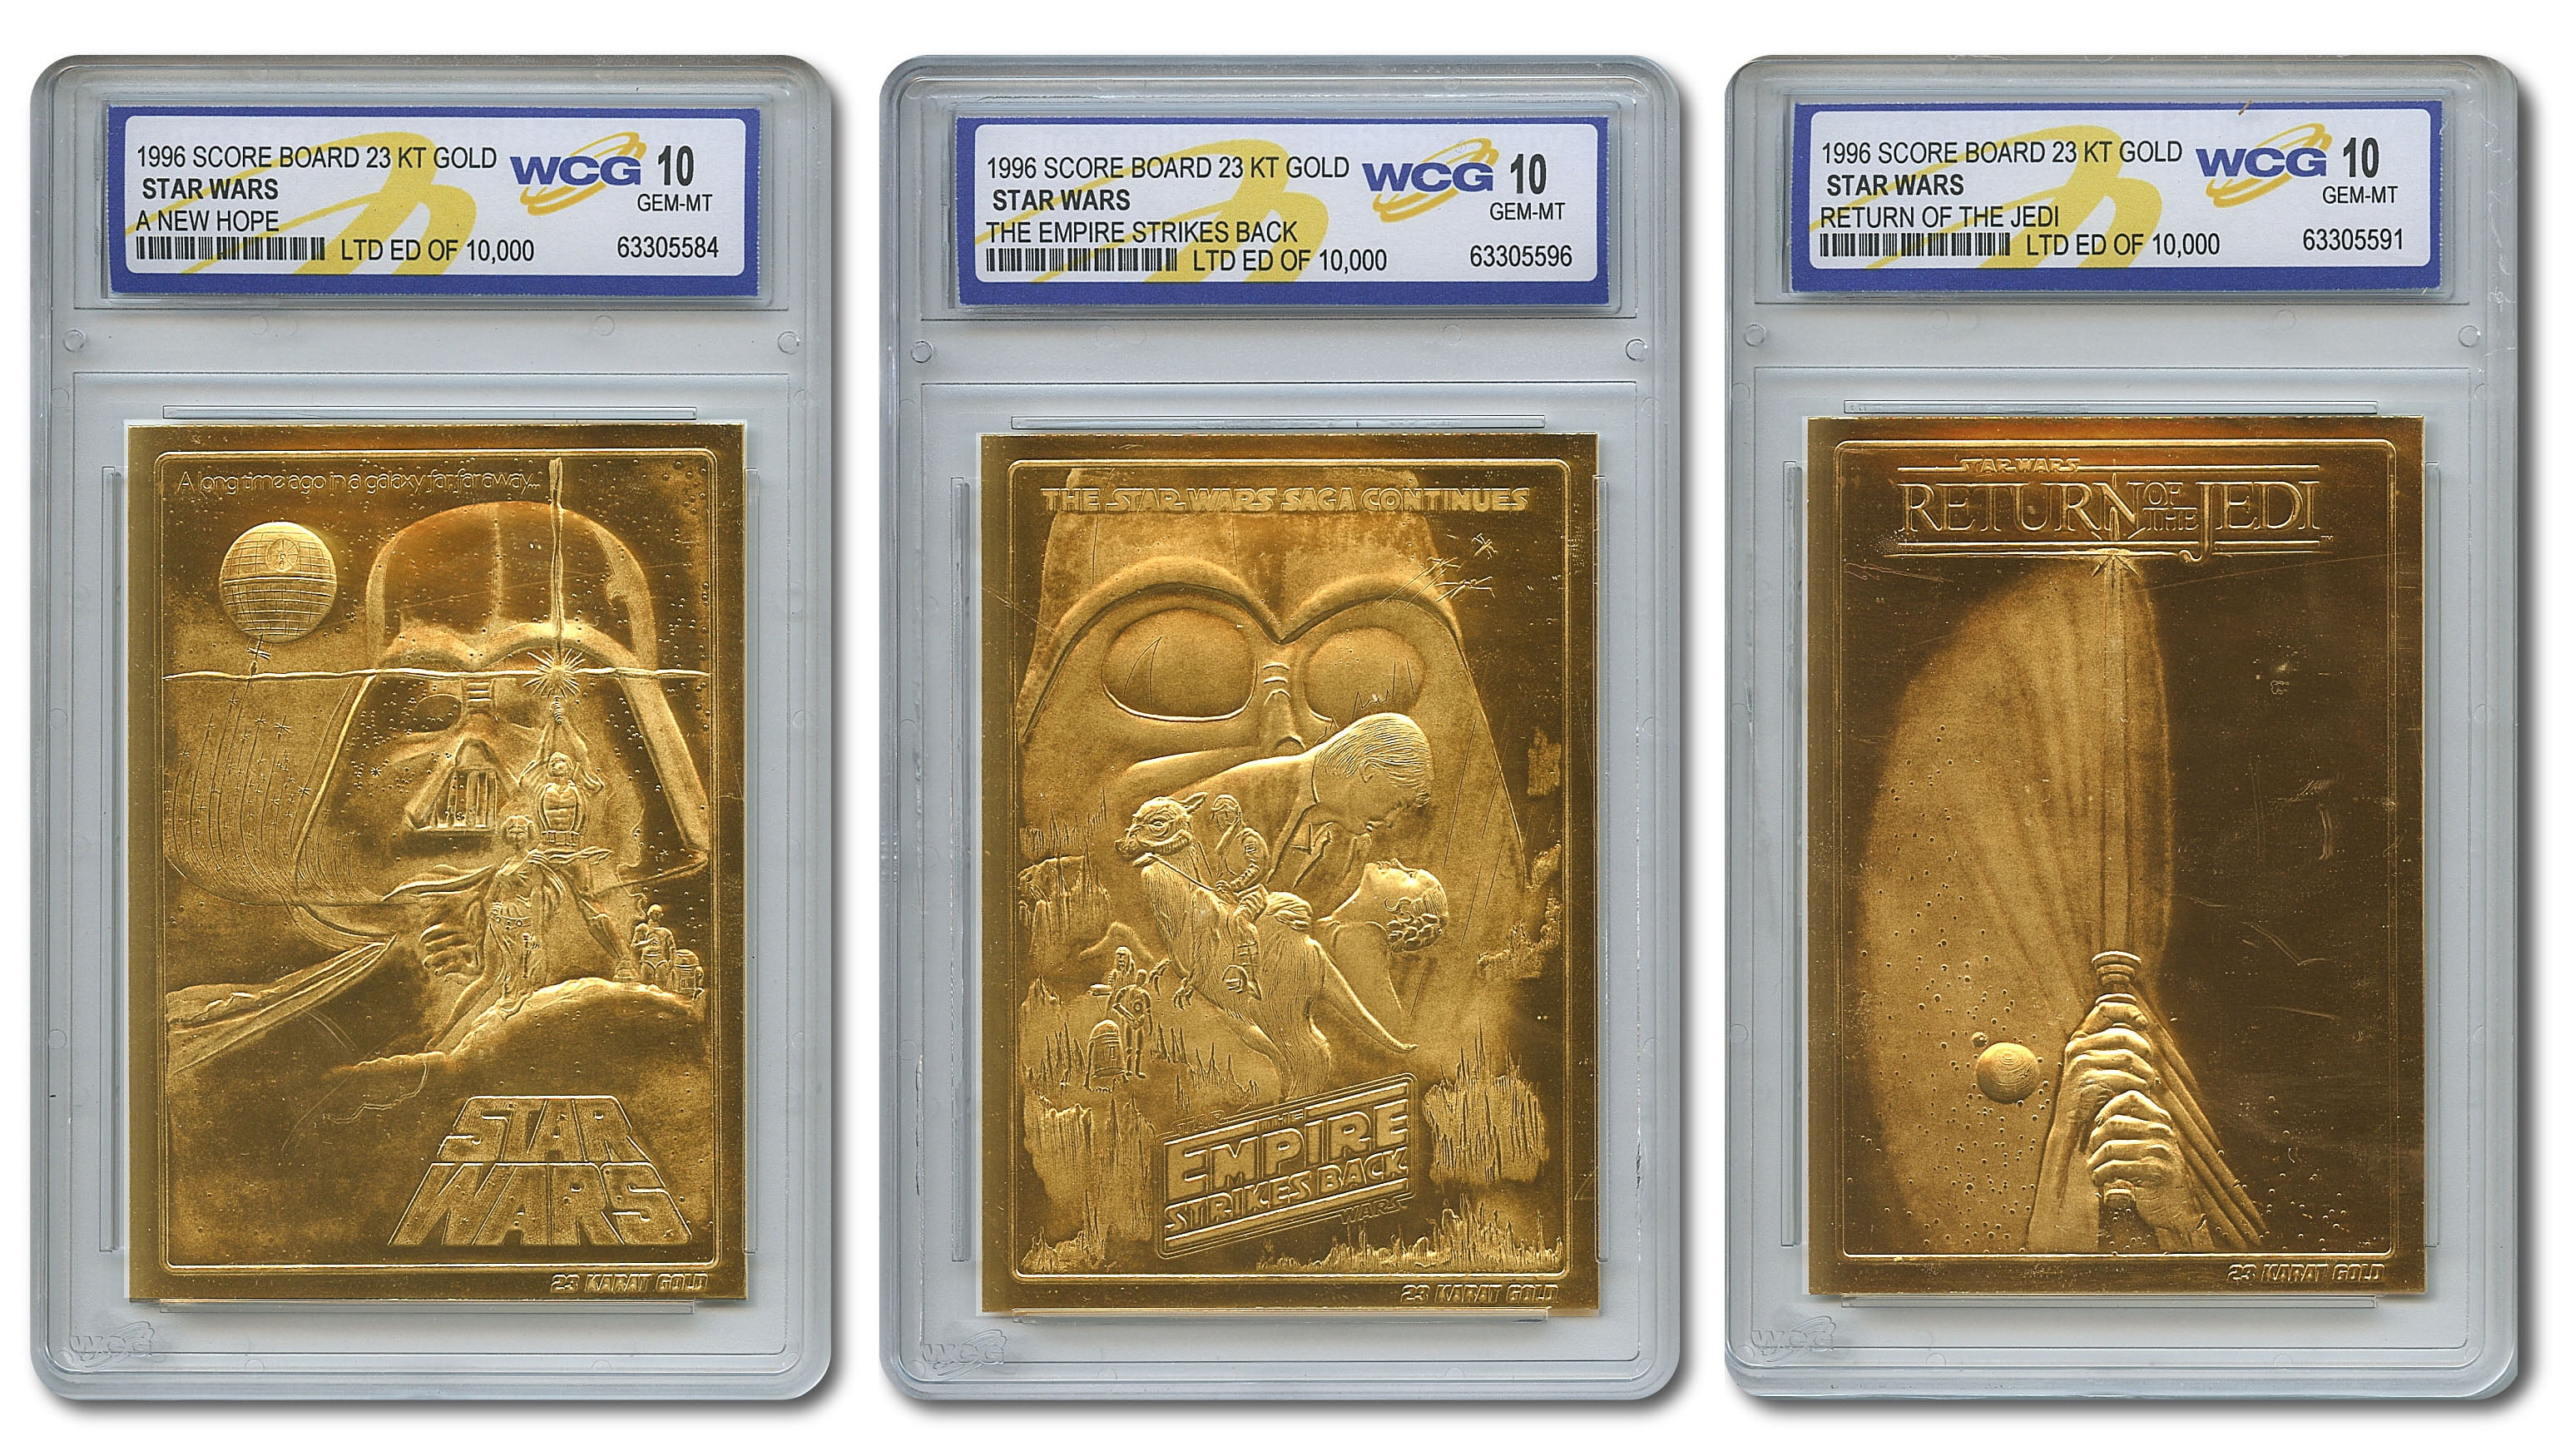 Star Wars DARTH VADER 23KT Gold Card Sculptured Limited Edition #/10,000 *BOGO* 